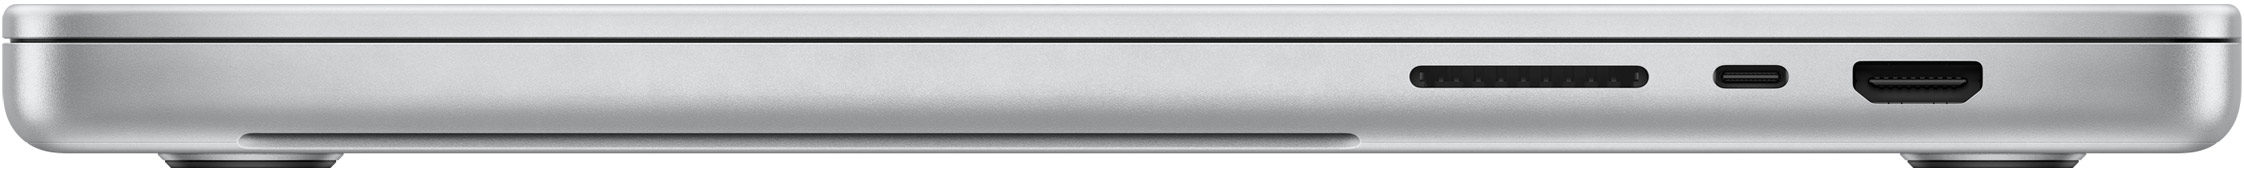 Puertos en el MacBook Pro del 2021 con M1 Pro